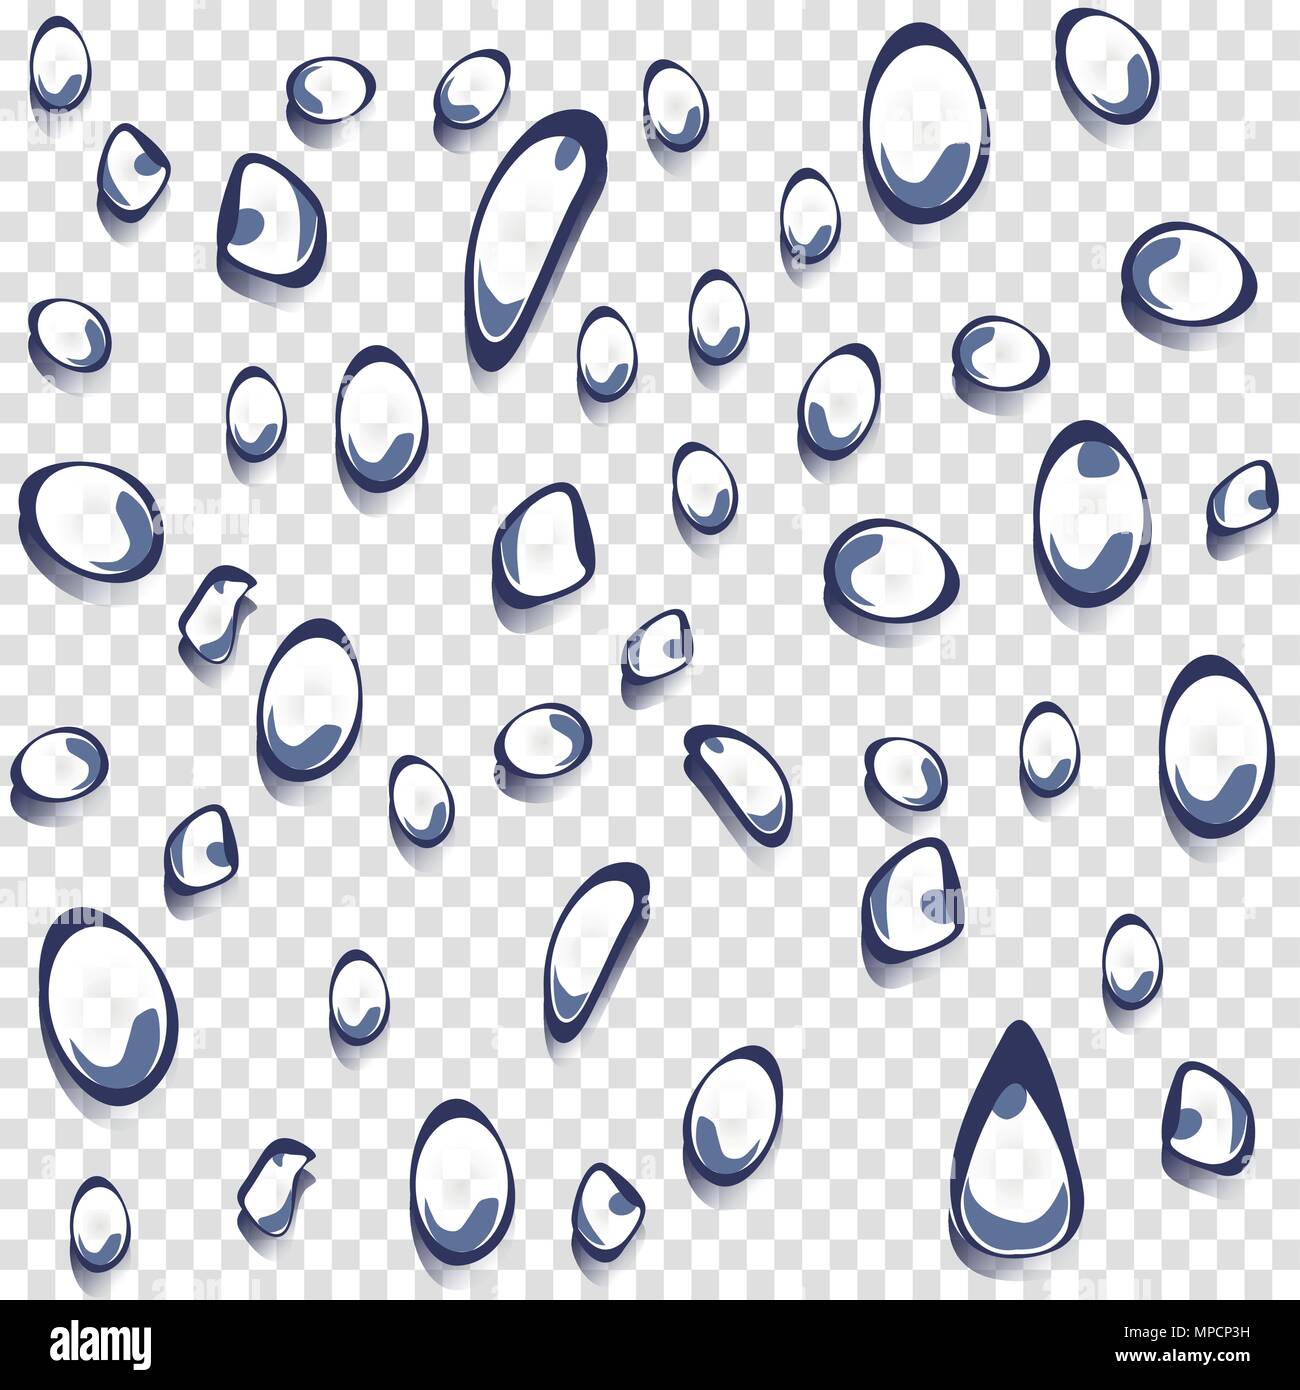 Isolierte Wasser Tropfen mit Transparenz grauen und weißen rechteckigen Raster. Regentropfen Vector Illustration Collection. Makro Regen fällt auf Fensterglas - Vektor Il Stock Vektor